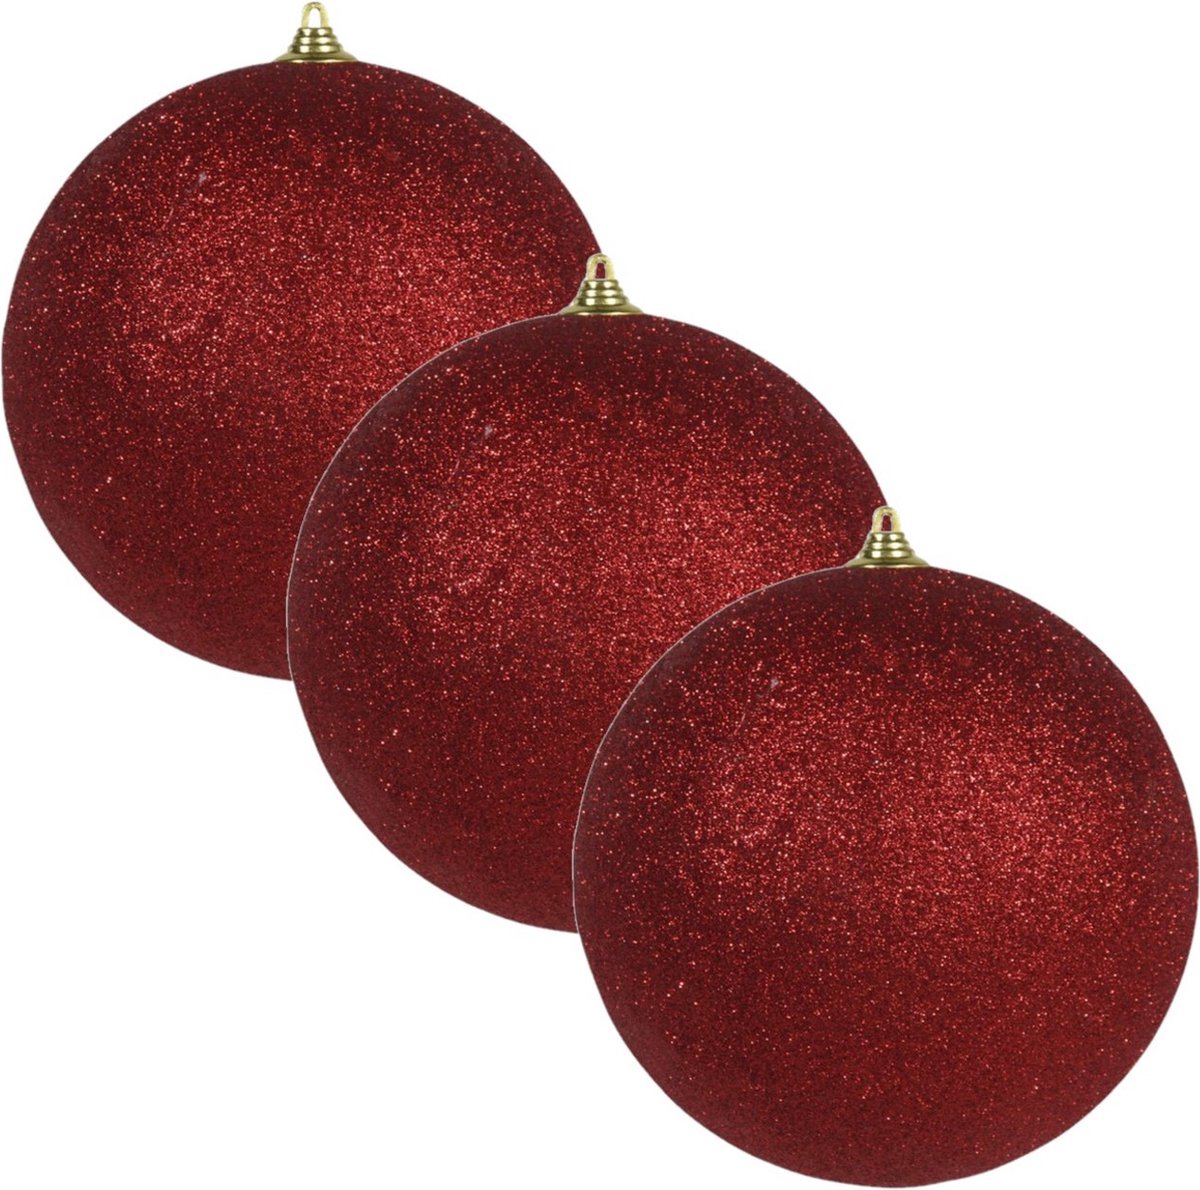 4x Rode grote glitter kerstballen 13,5 cm - hangdecoratie / boomversiering glitter kerstballen